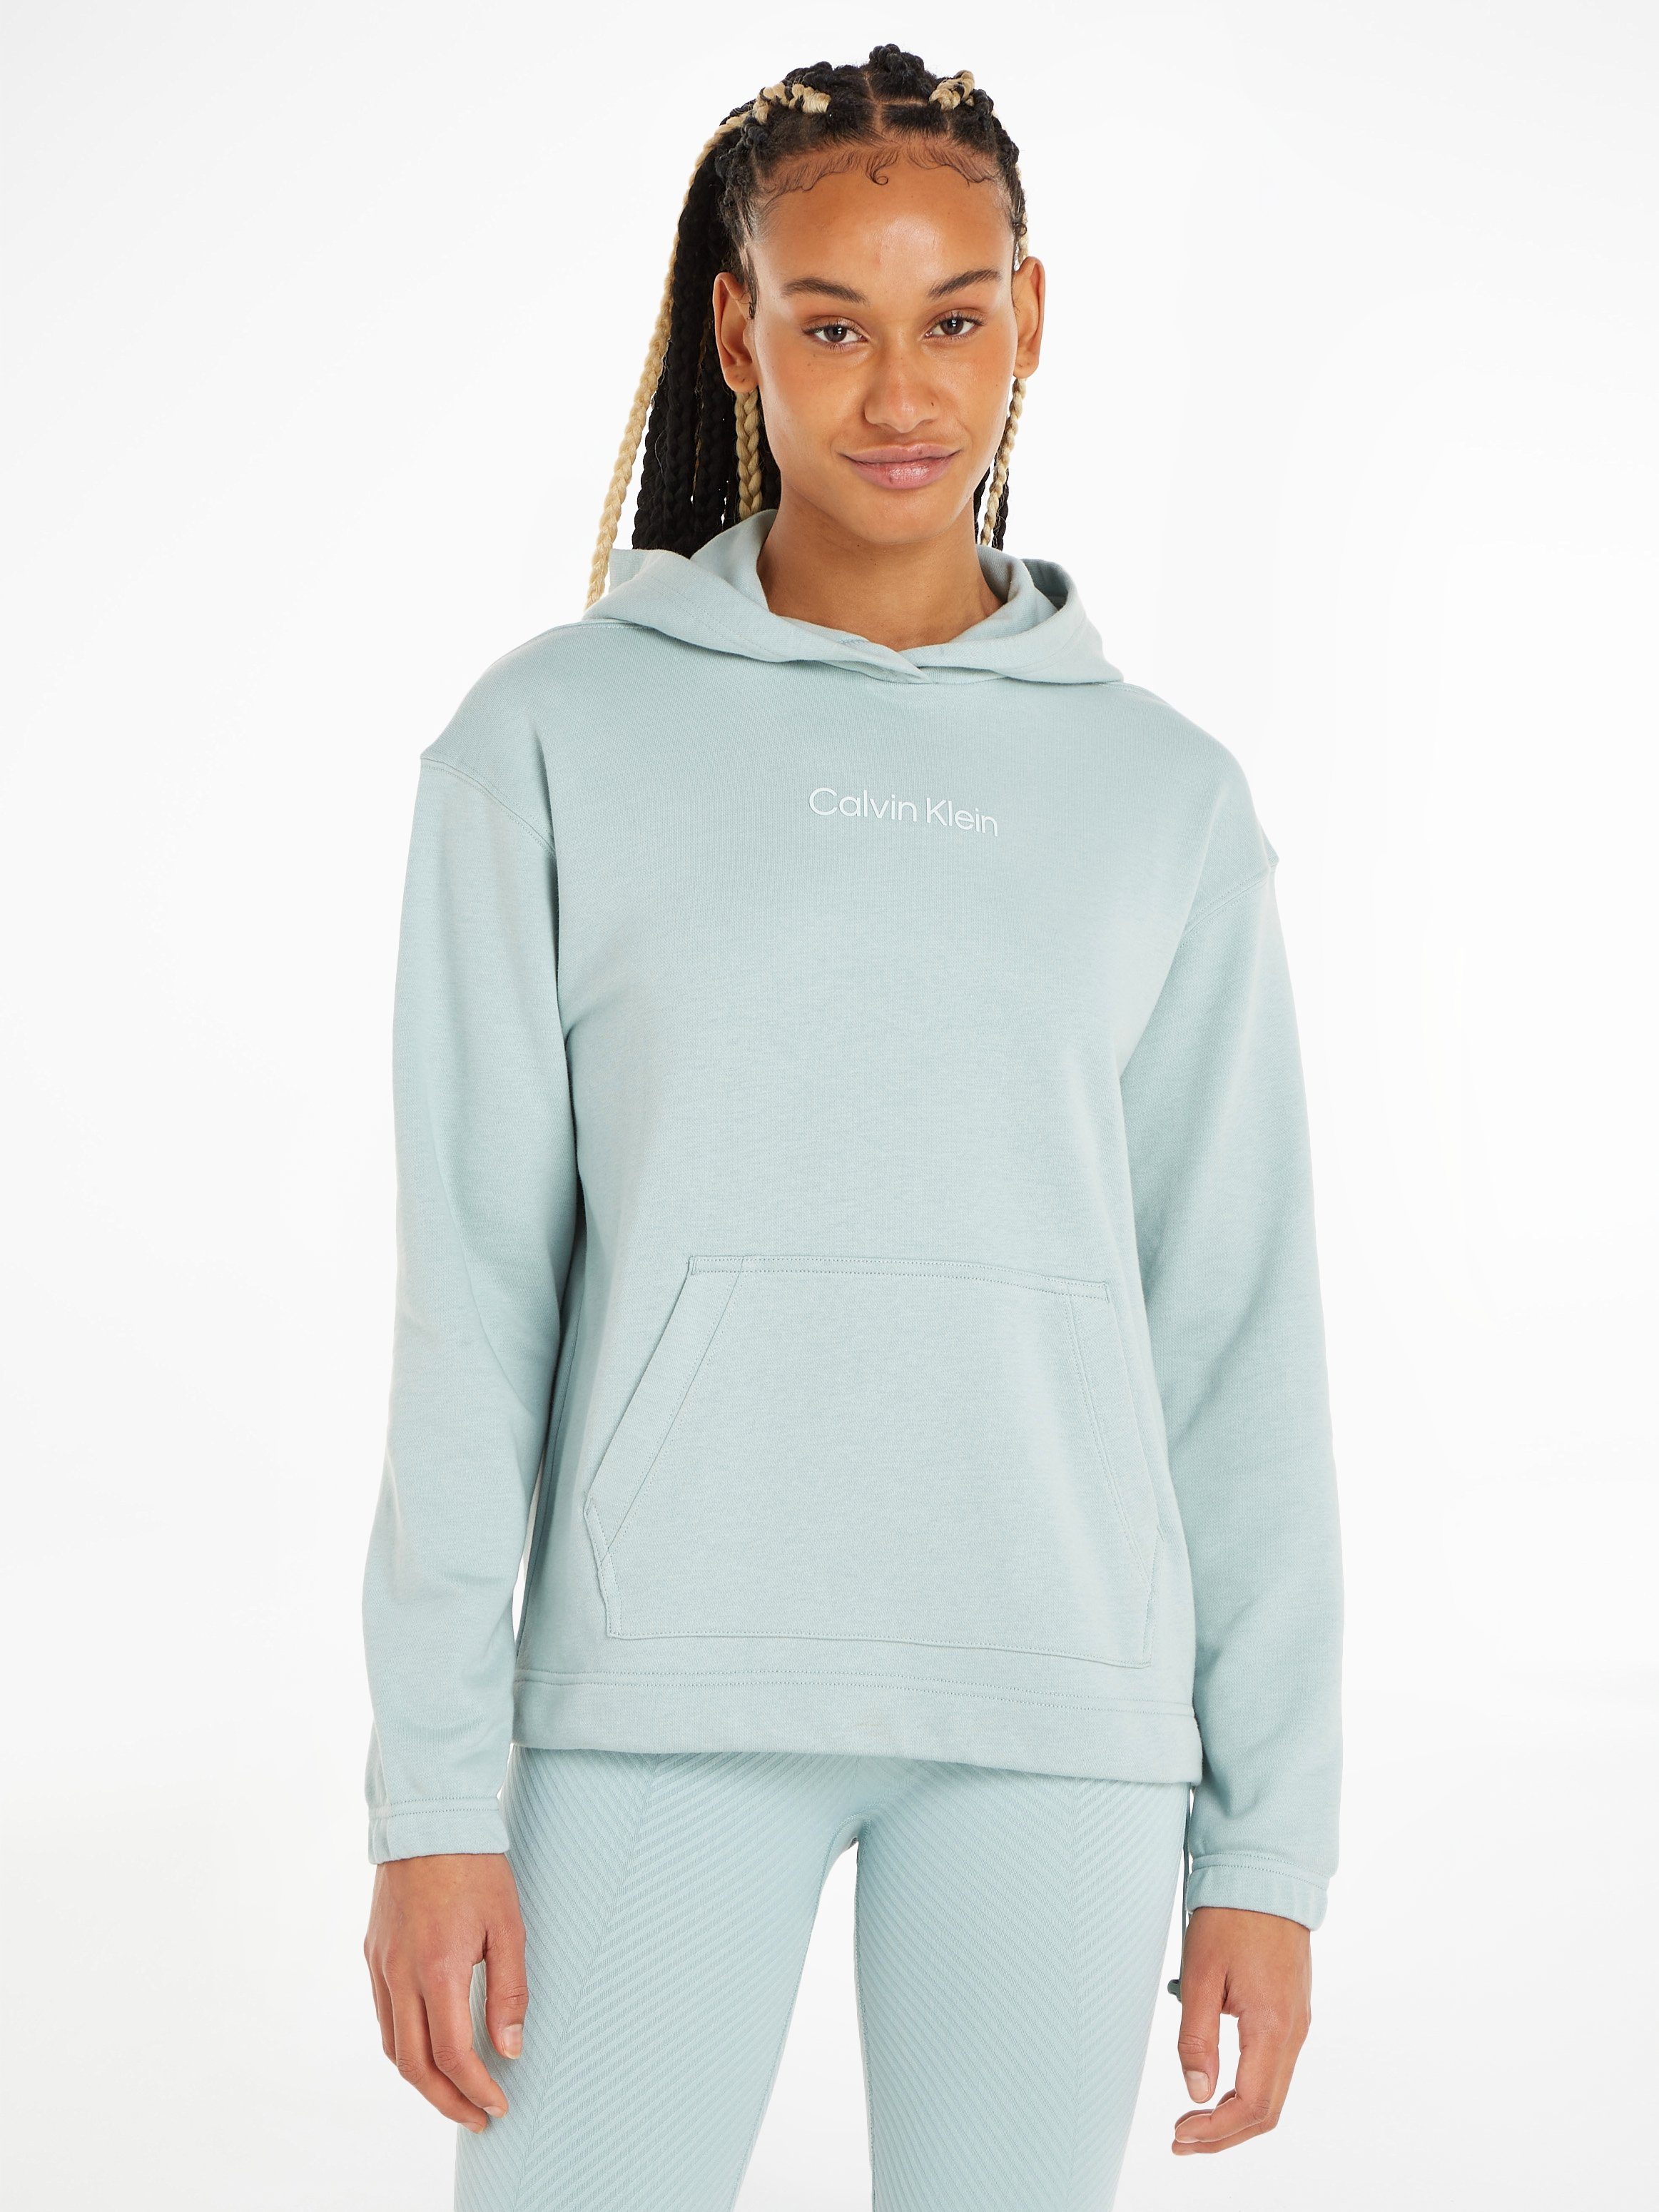 Calvin Klein Sport Hoodie - PW blau Sweatshirt Kapuzensweatshirt